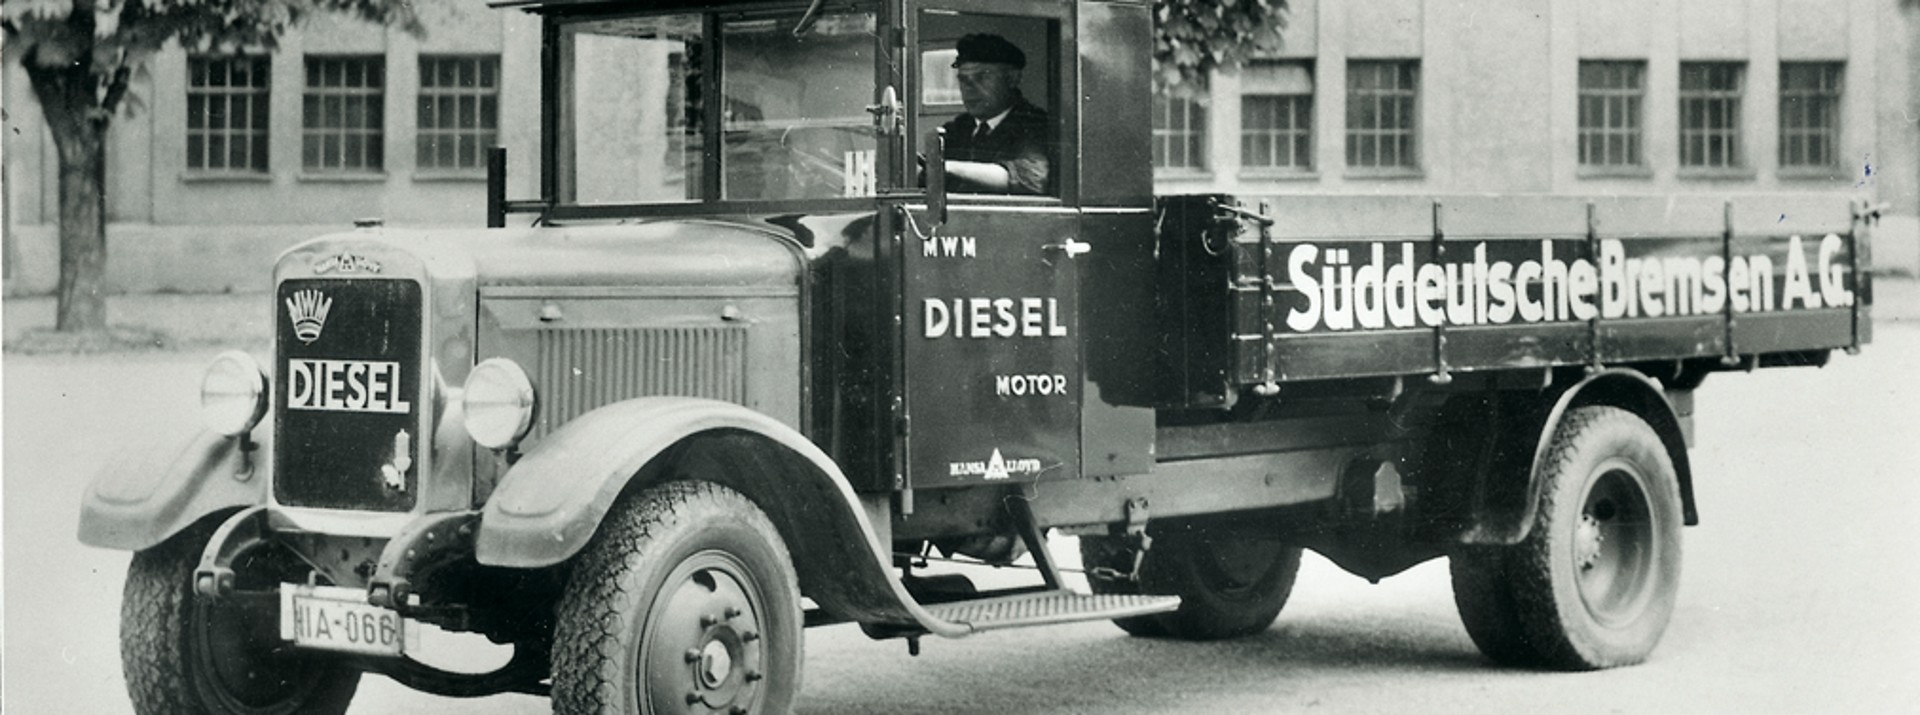 Schwarz-weiß-Foto eines historischen Lkw mit der Aufschrift "Süddeutsche Bremse A.G." an der Ladefläche